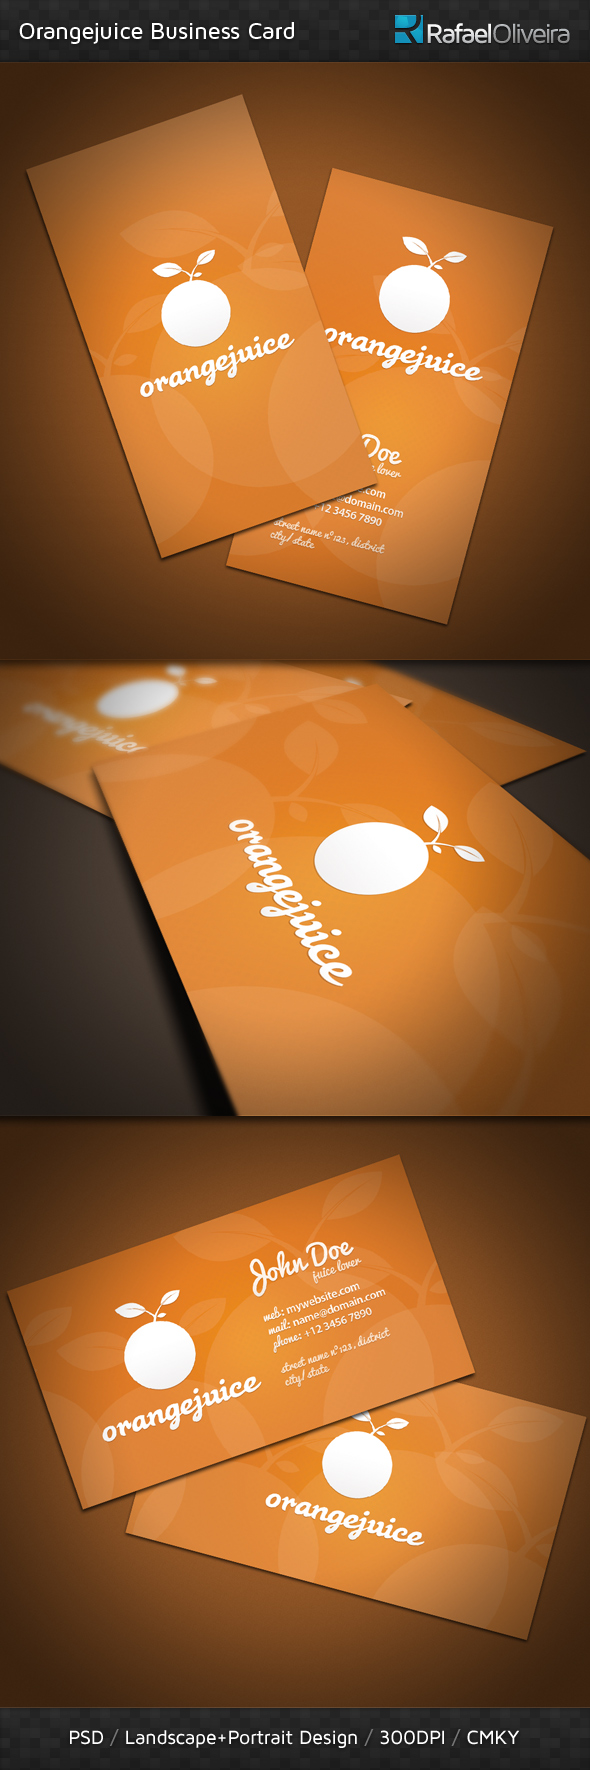 Orangejuice Business Card